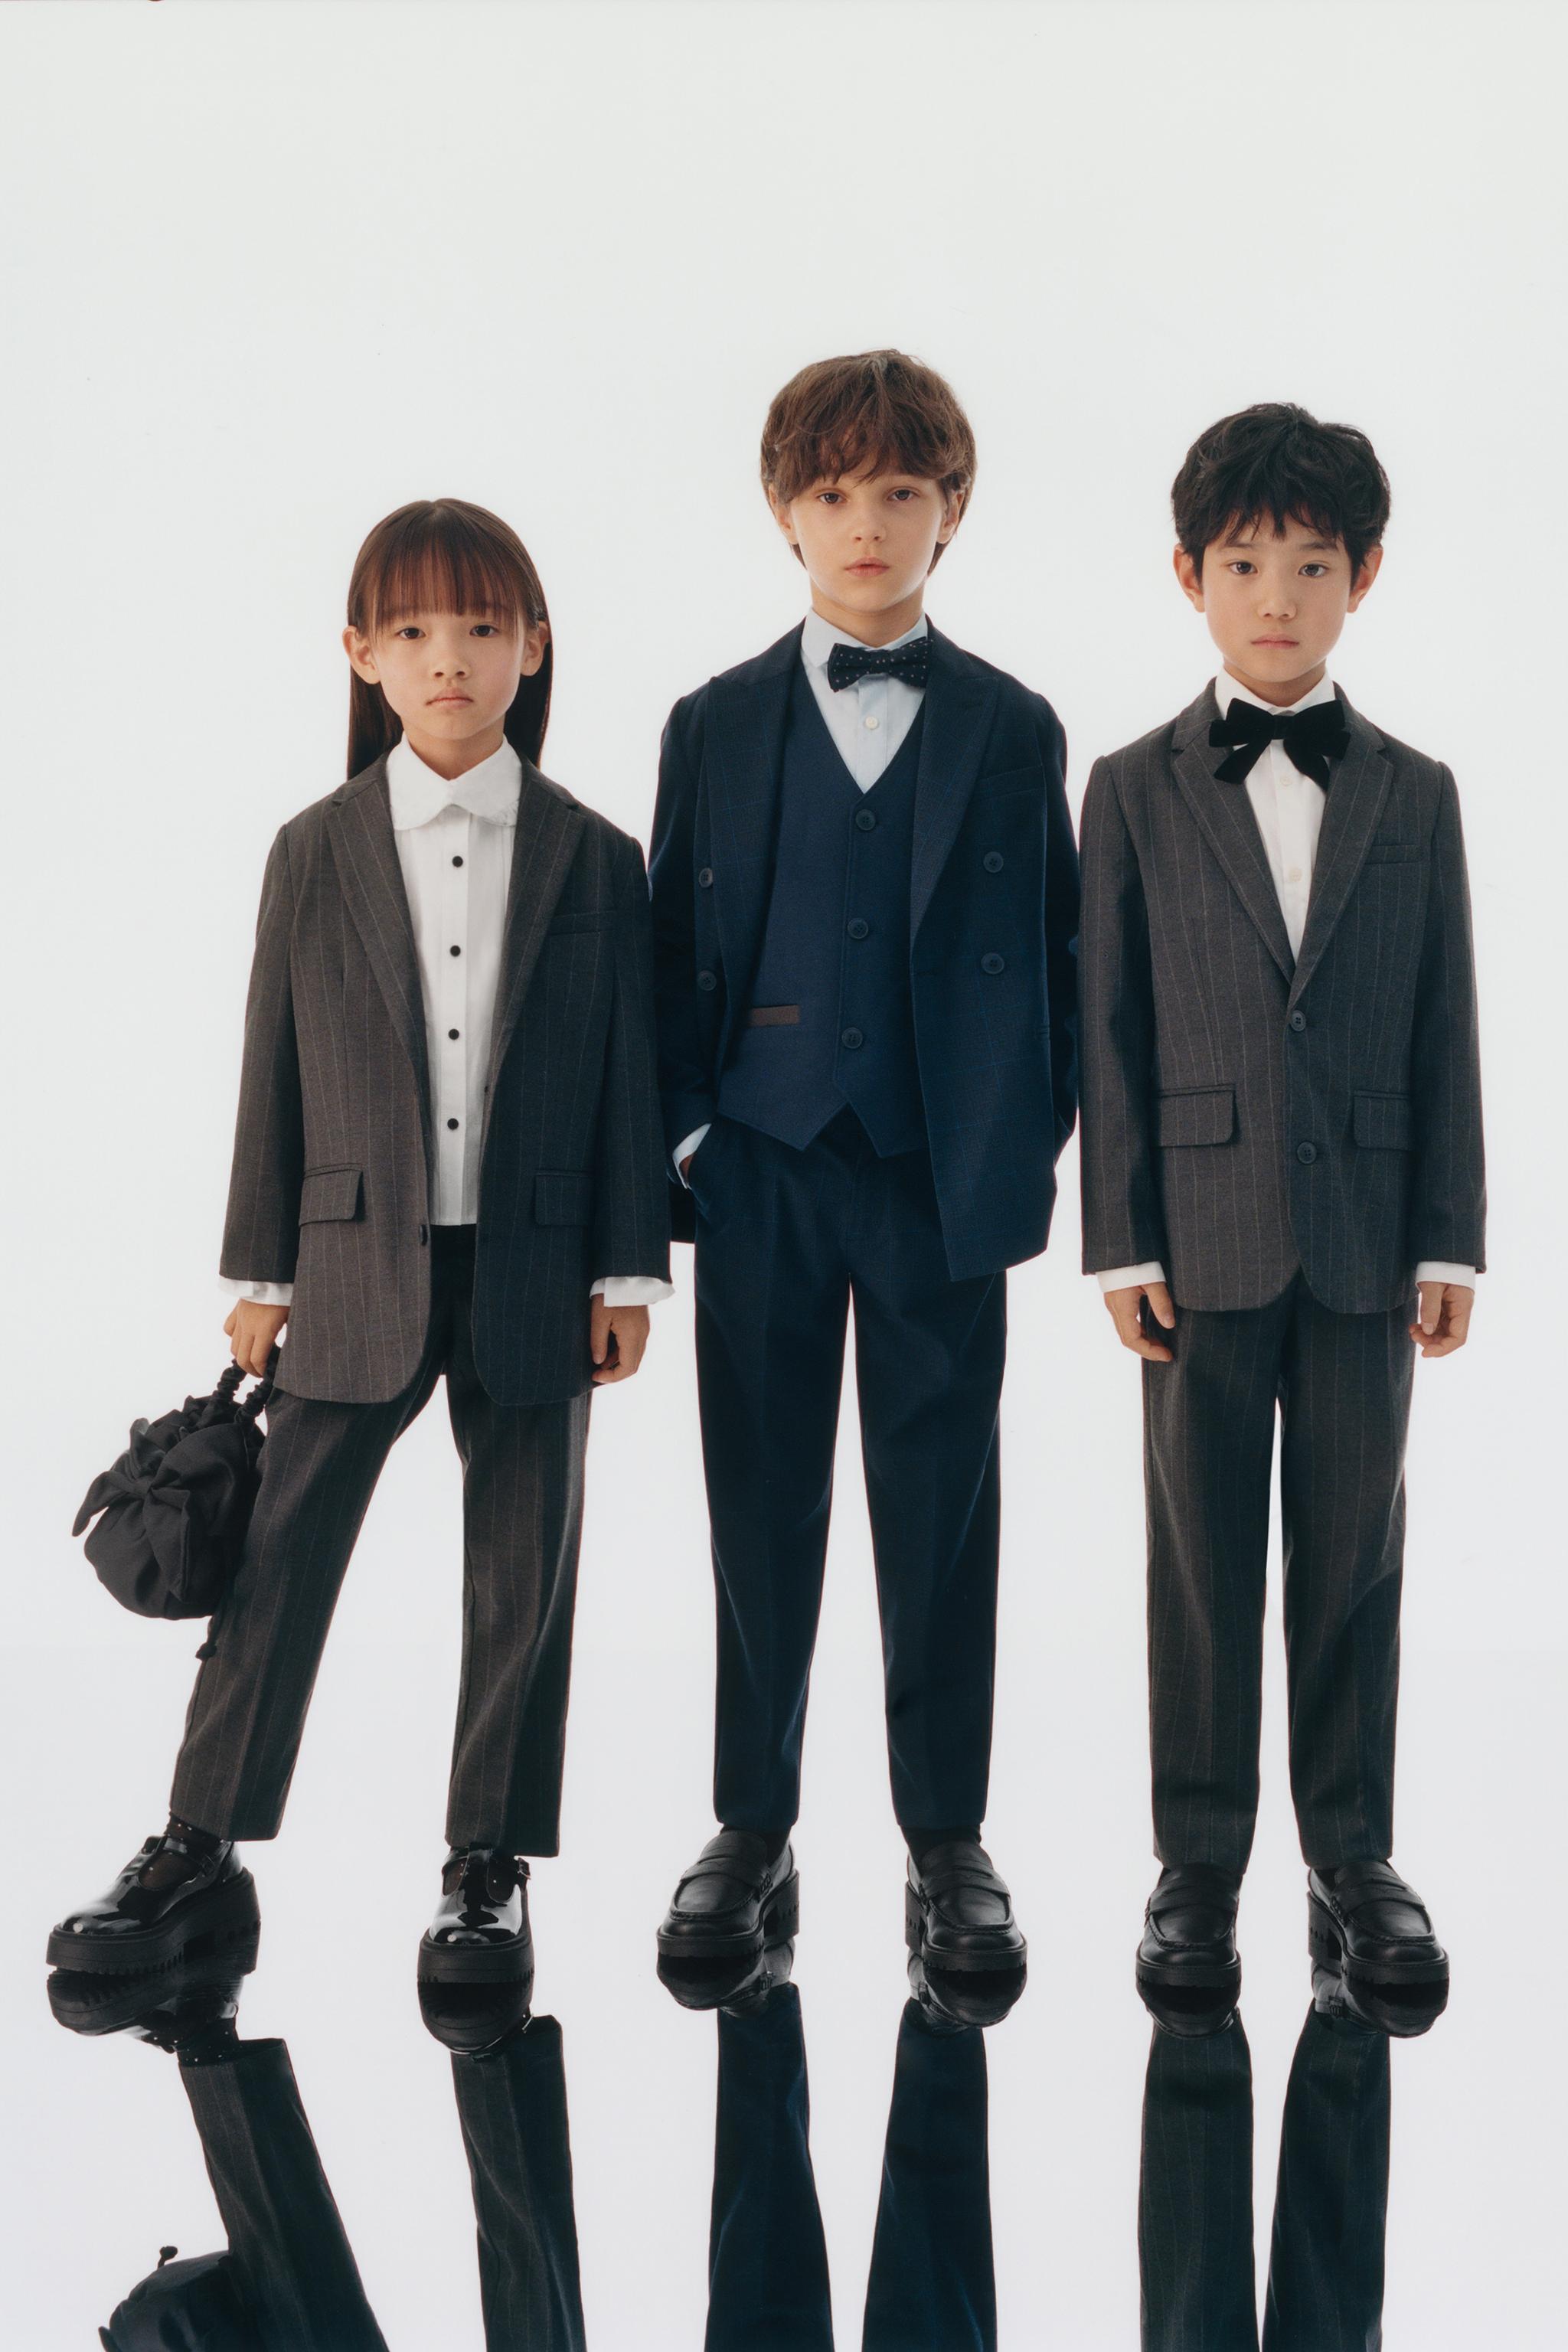 セレモニー・フォーマルウェア | 男の子 (子供服) | 最新コレクション 